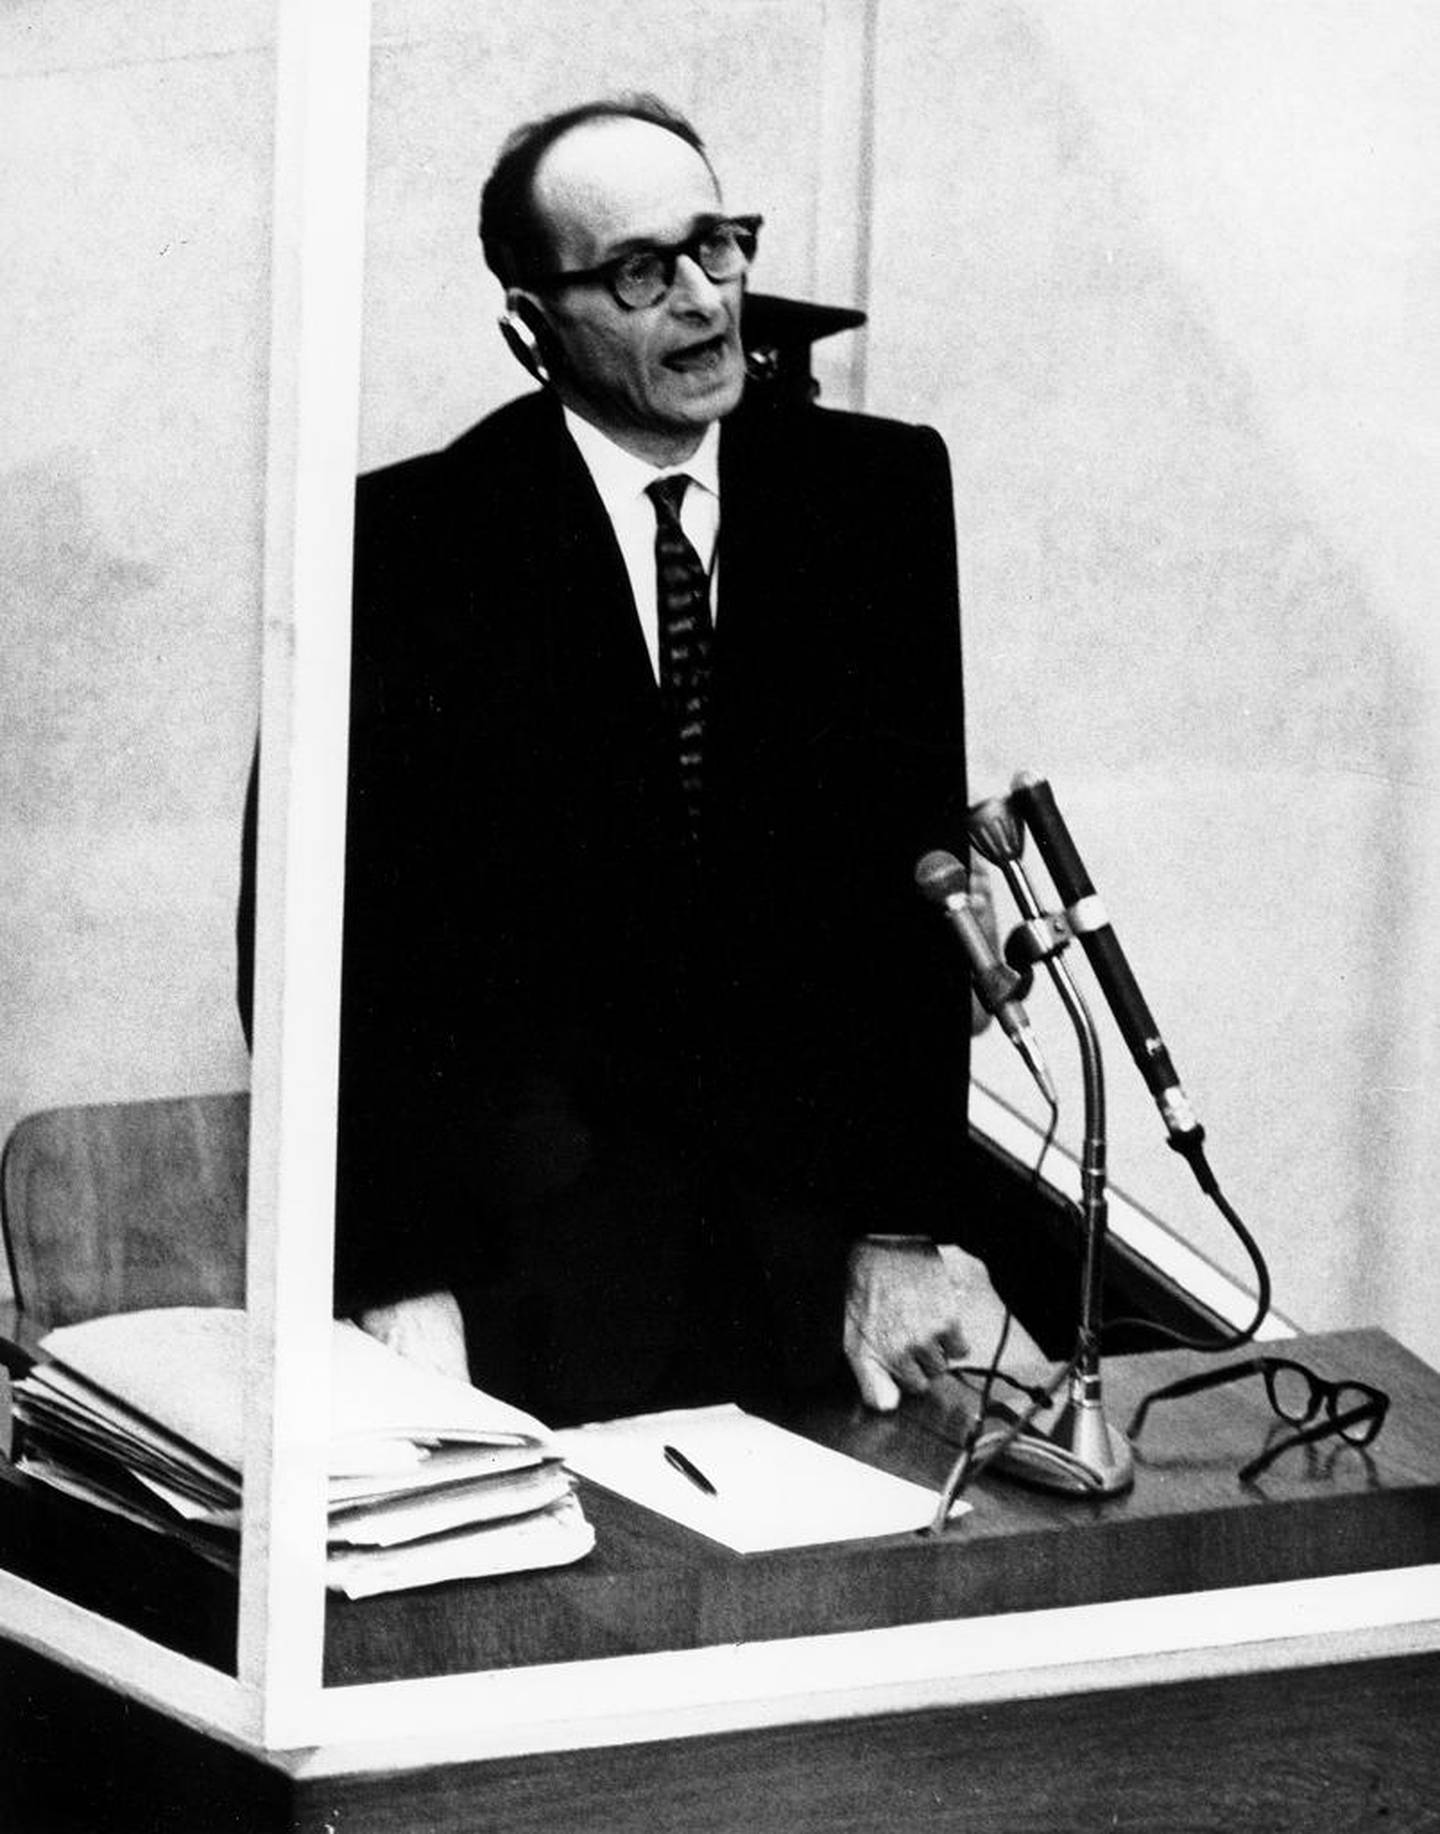 Adolf Eichmann ble stilt for retten for sine krigsforbrytelser i Israel i 1961. Han var en av de hovedansvarlige for logistikken under Holocaust. Eichmann ble dømt til døden.